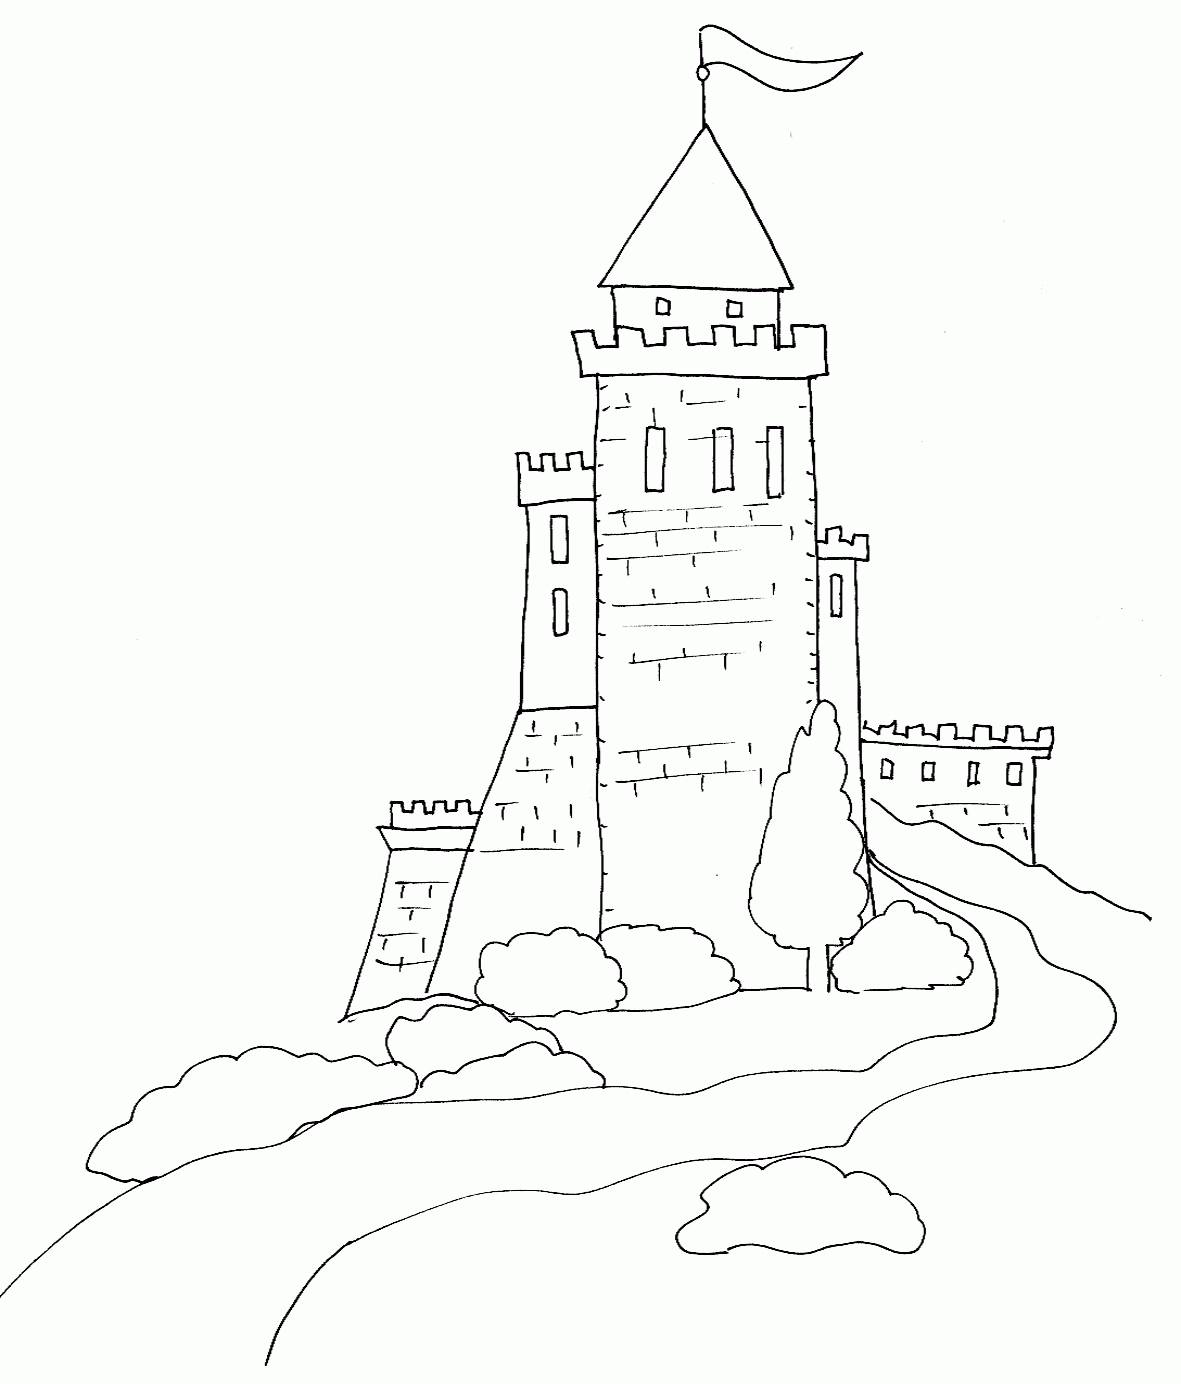 Coloriage D'un Chateau Fort : Dessin 3 - Tête À Modeler intérieur Coloriage À Imprimer Chateau De Princesse